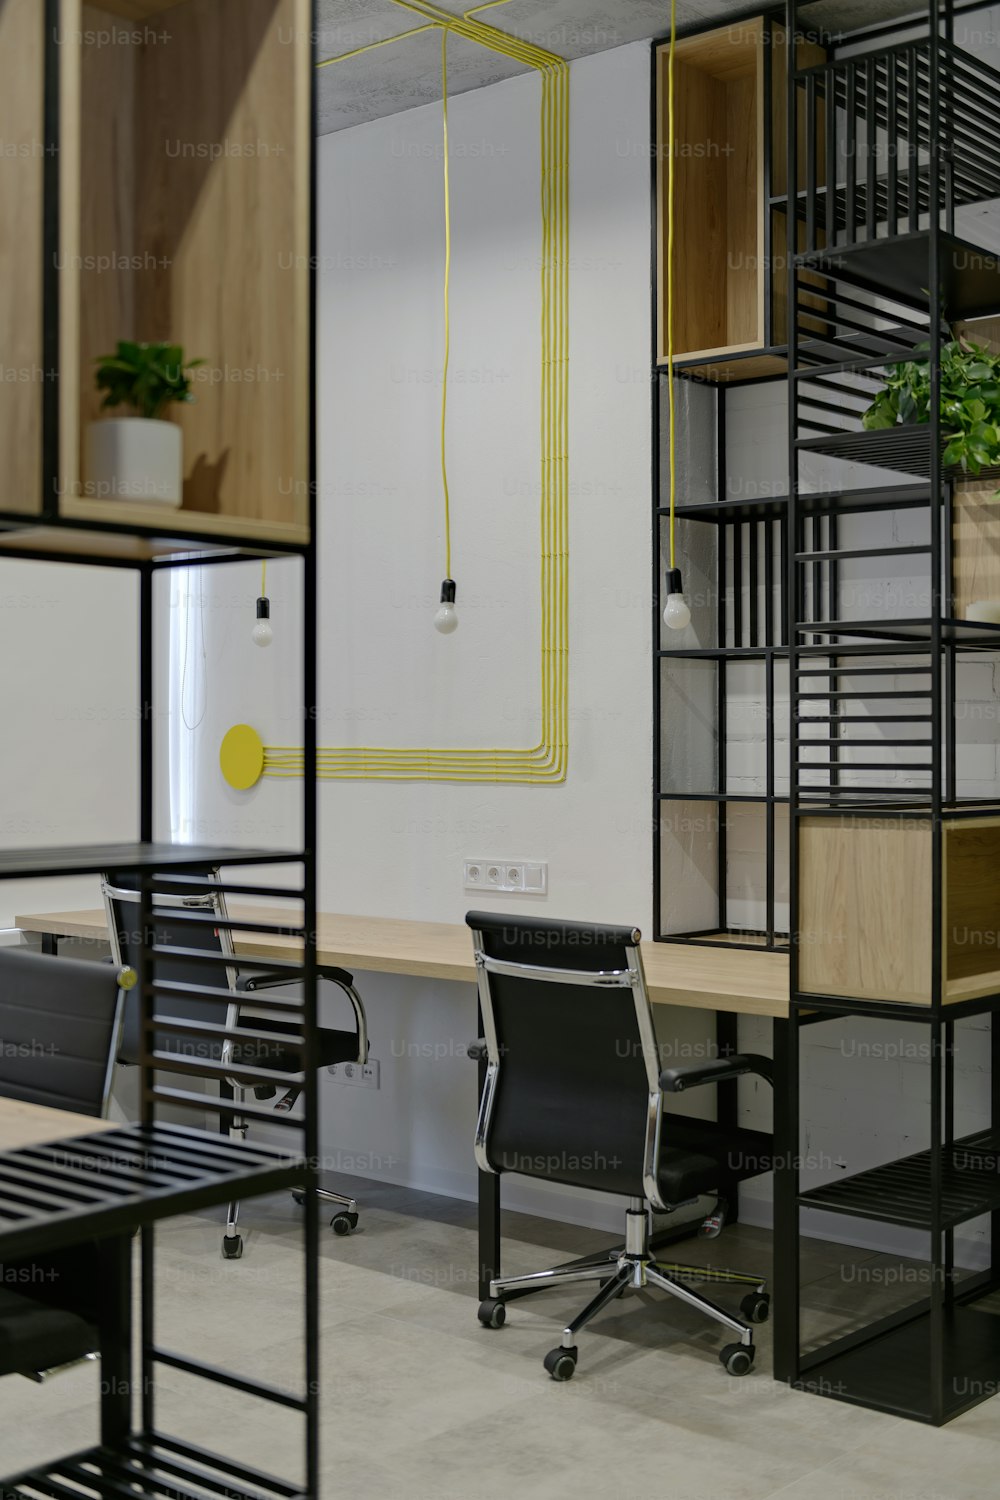 una habitación con escritorio, silla, estantes y una planta